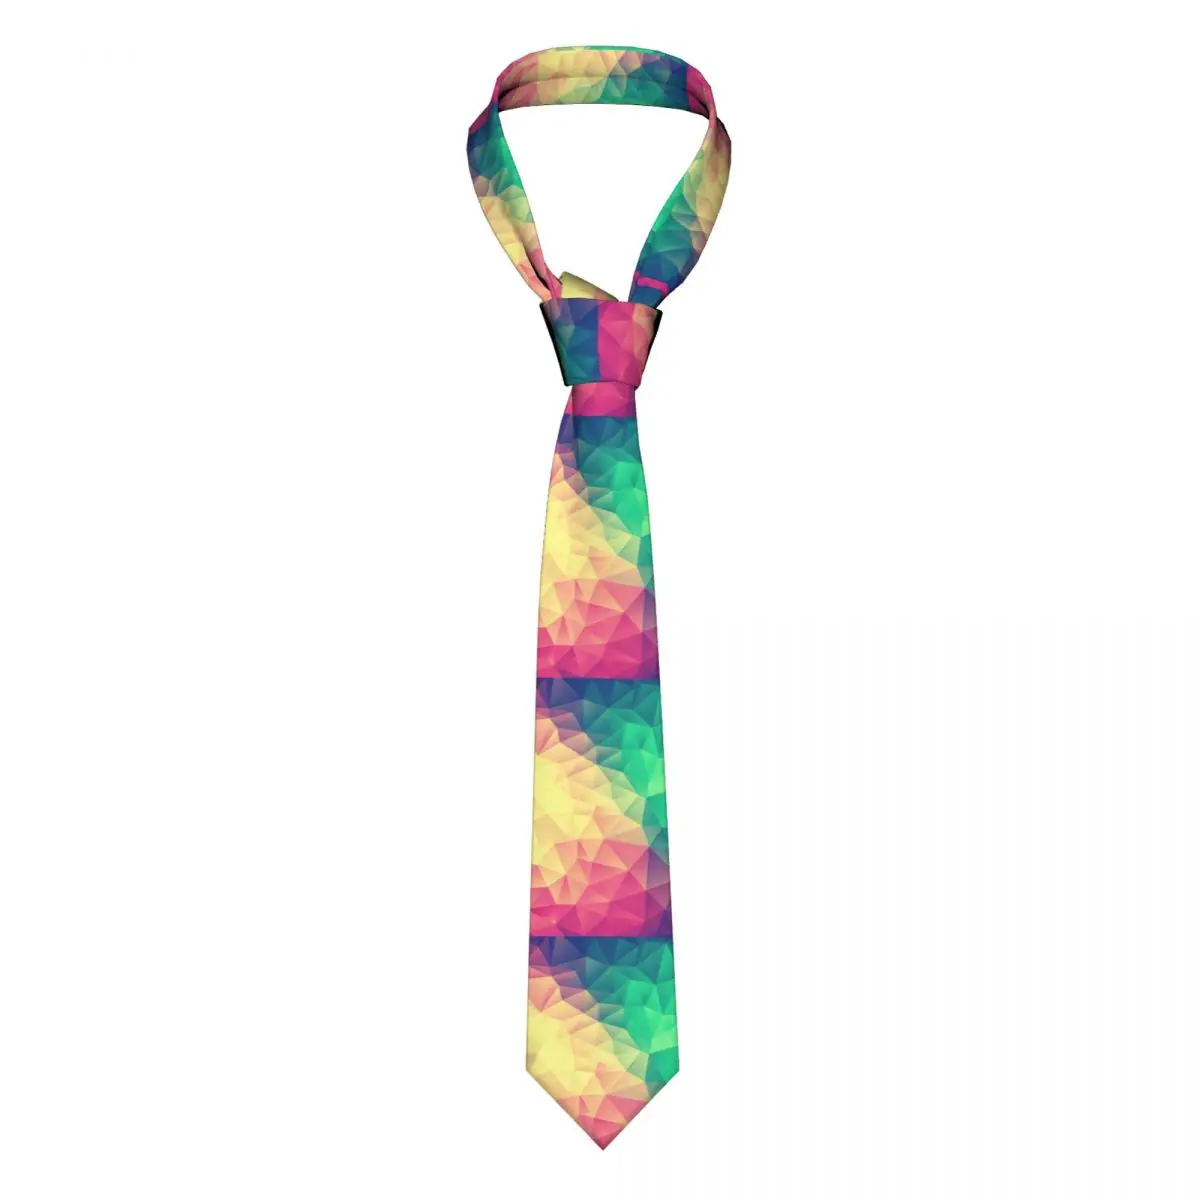 

Галстук с абстрактным геометрическим принтом, разноцветный треугольный мужской модный шейный галстук, Подарочная рубашка, деловой стиль, полиэстер, Шелковый шейный платок